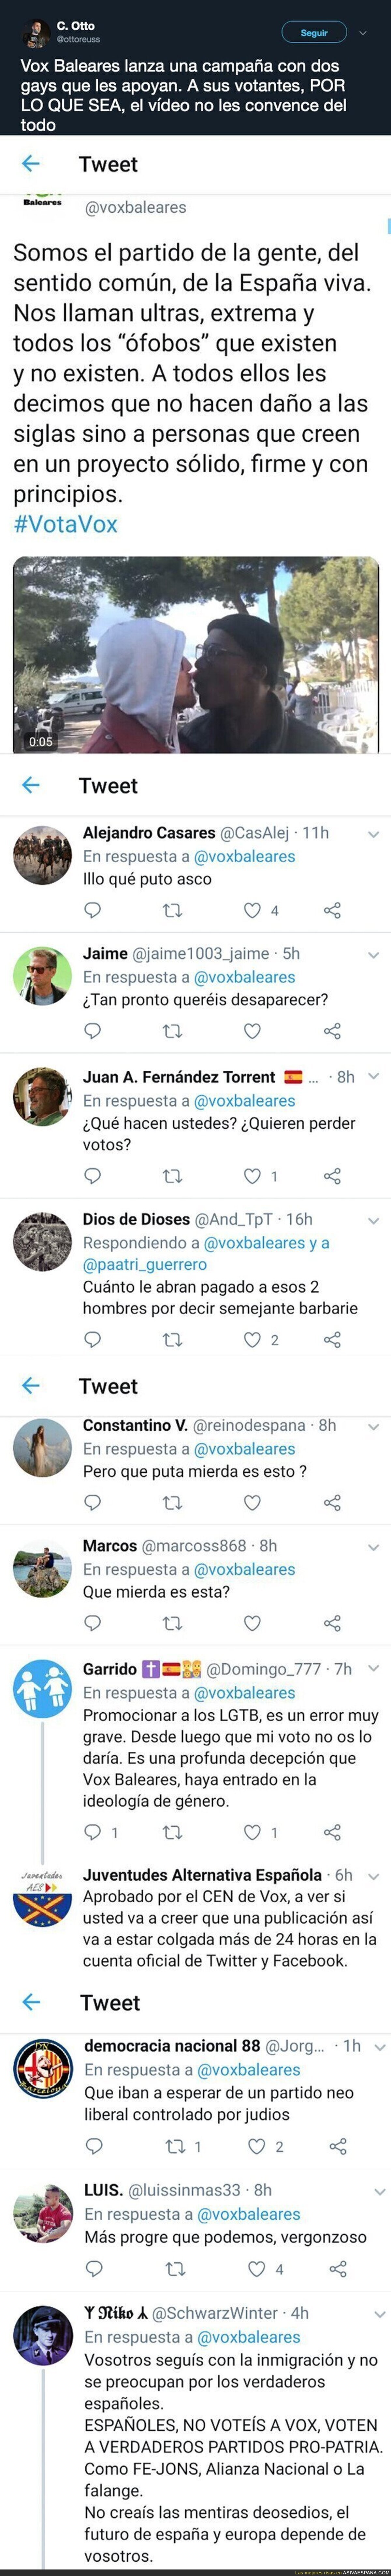 VOX Baleares lanza un vídeo de dos homosexuales besándose y apoyándoles y todos sus votantes no tardan en responder de forma negativa